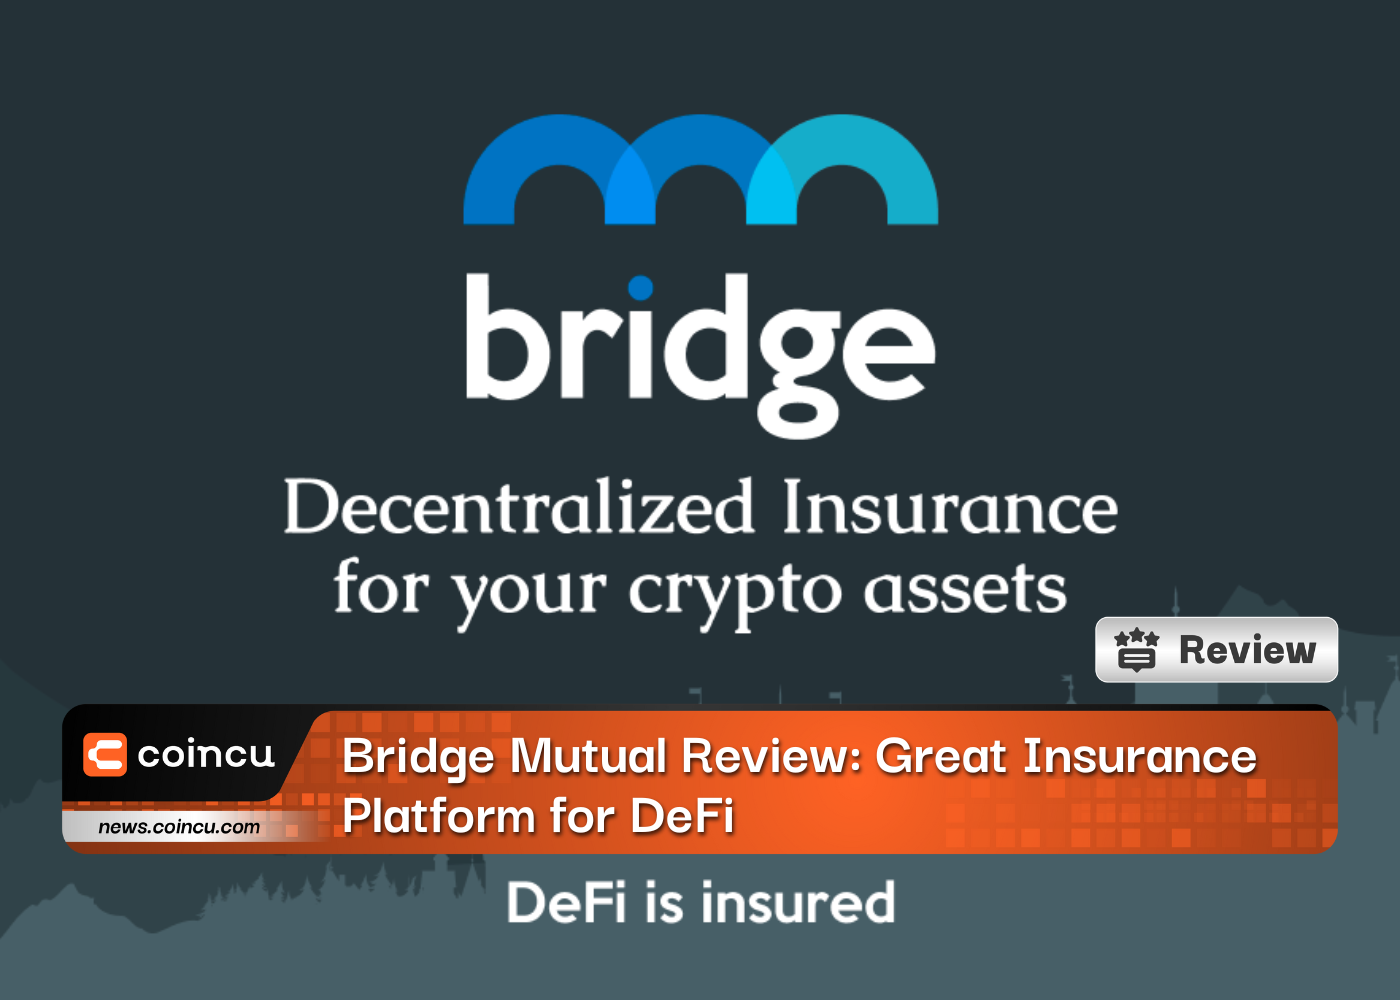 Bridge Mutual Review: Great Insurance Platform for DeFi